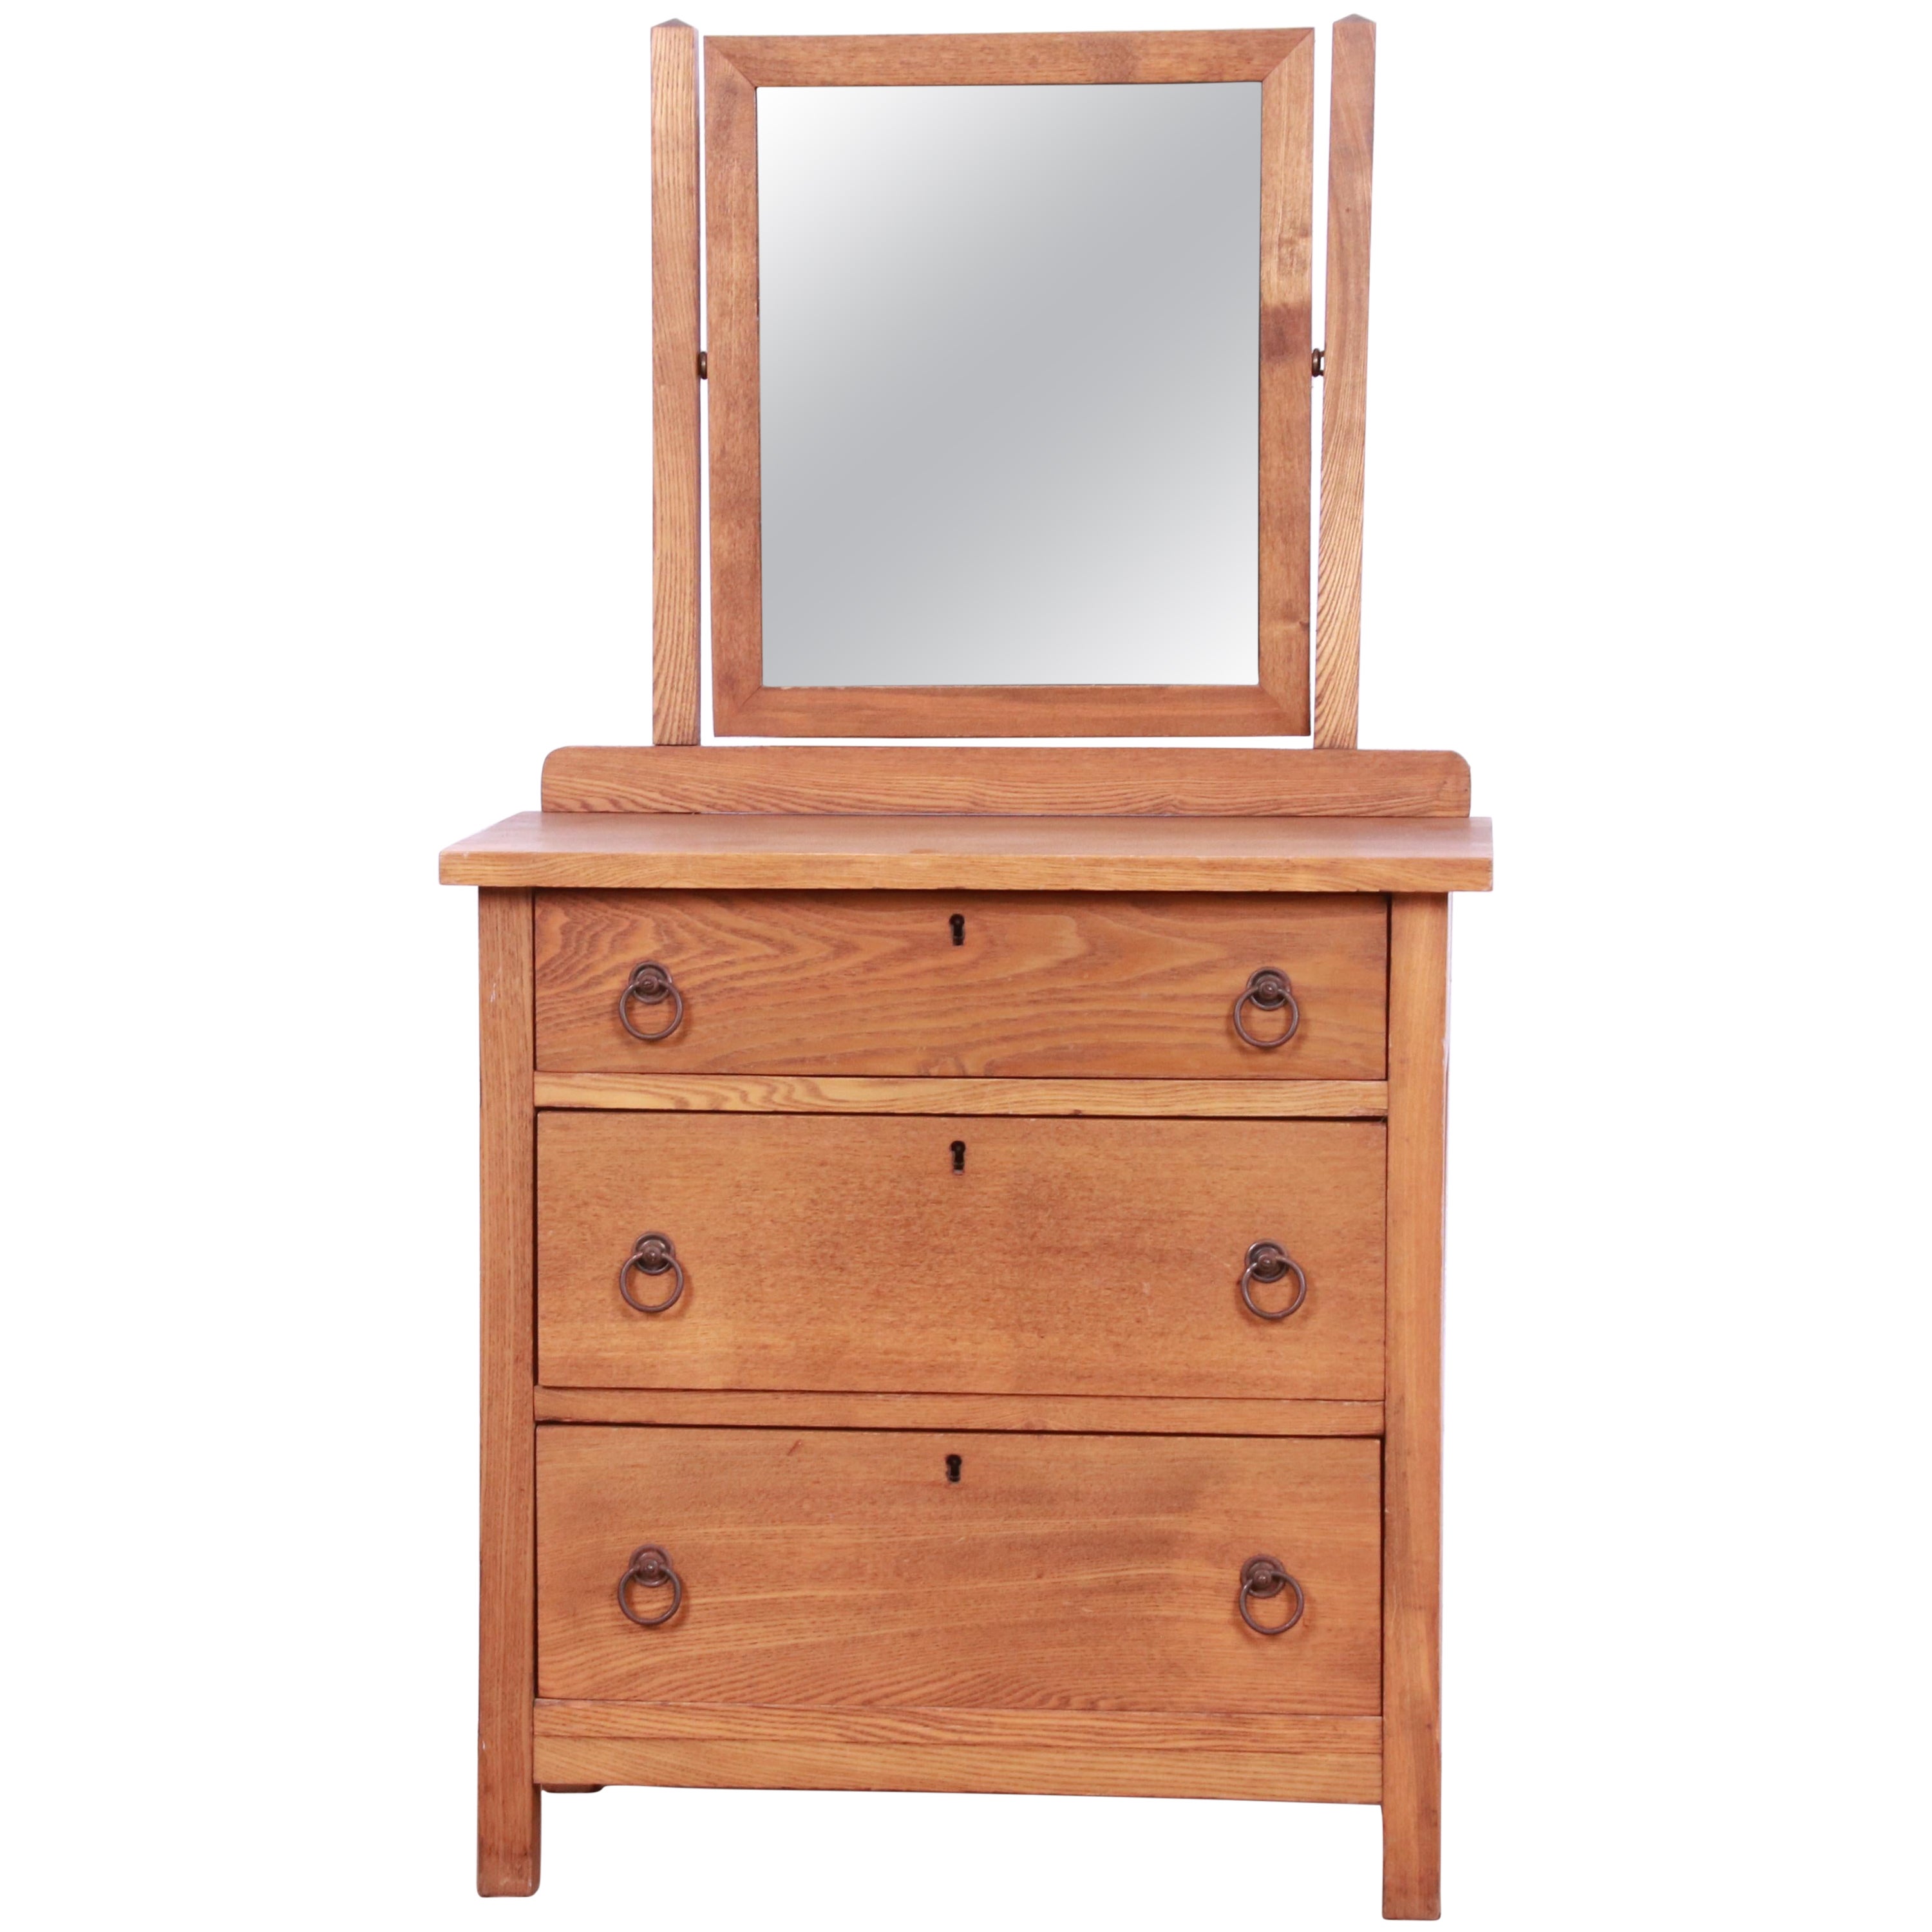 Antique Arts & Crafts Oak Child's Dresser with Mirror